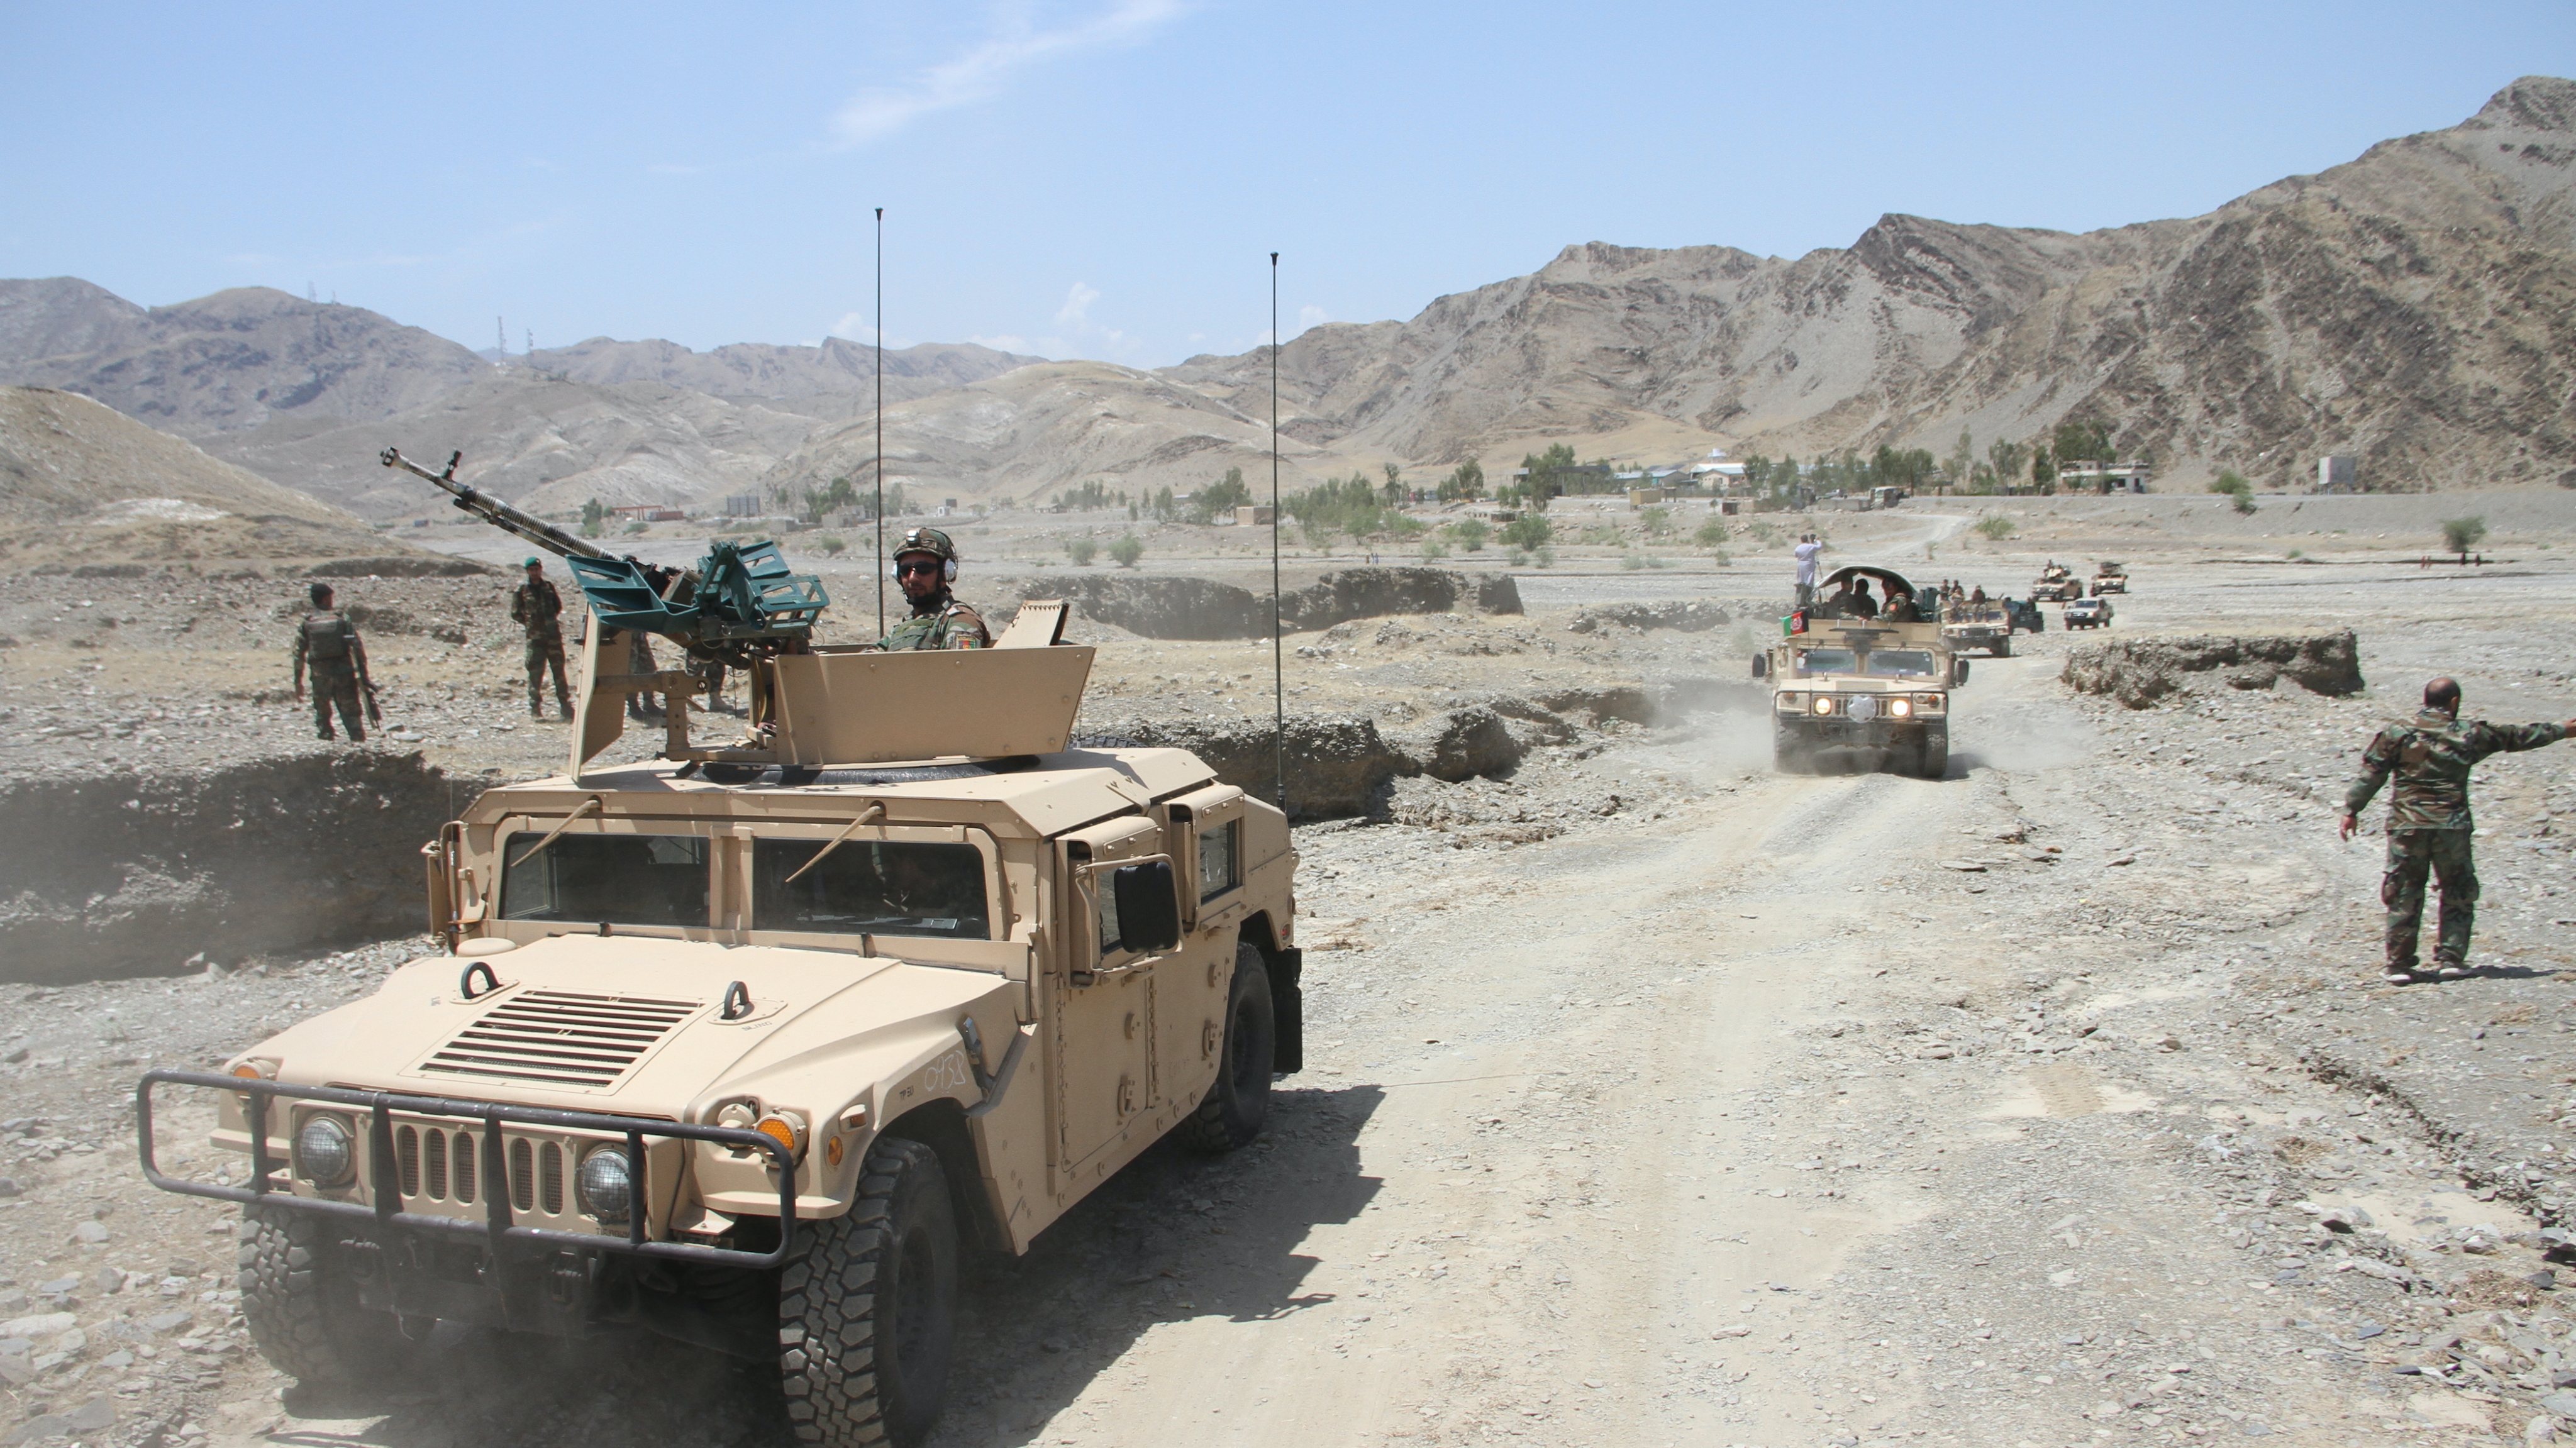 Em oito dias, as forças talibãs capturaram quase metade das capitais de província afegãs e controlam atualmente a maior parte do norte, oeste e sul do país